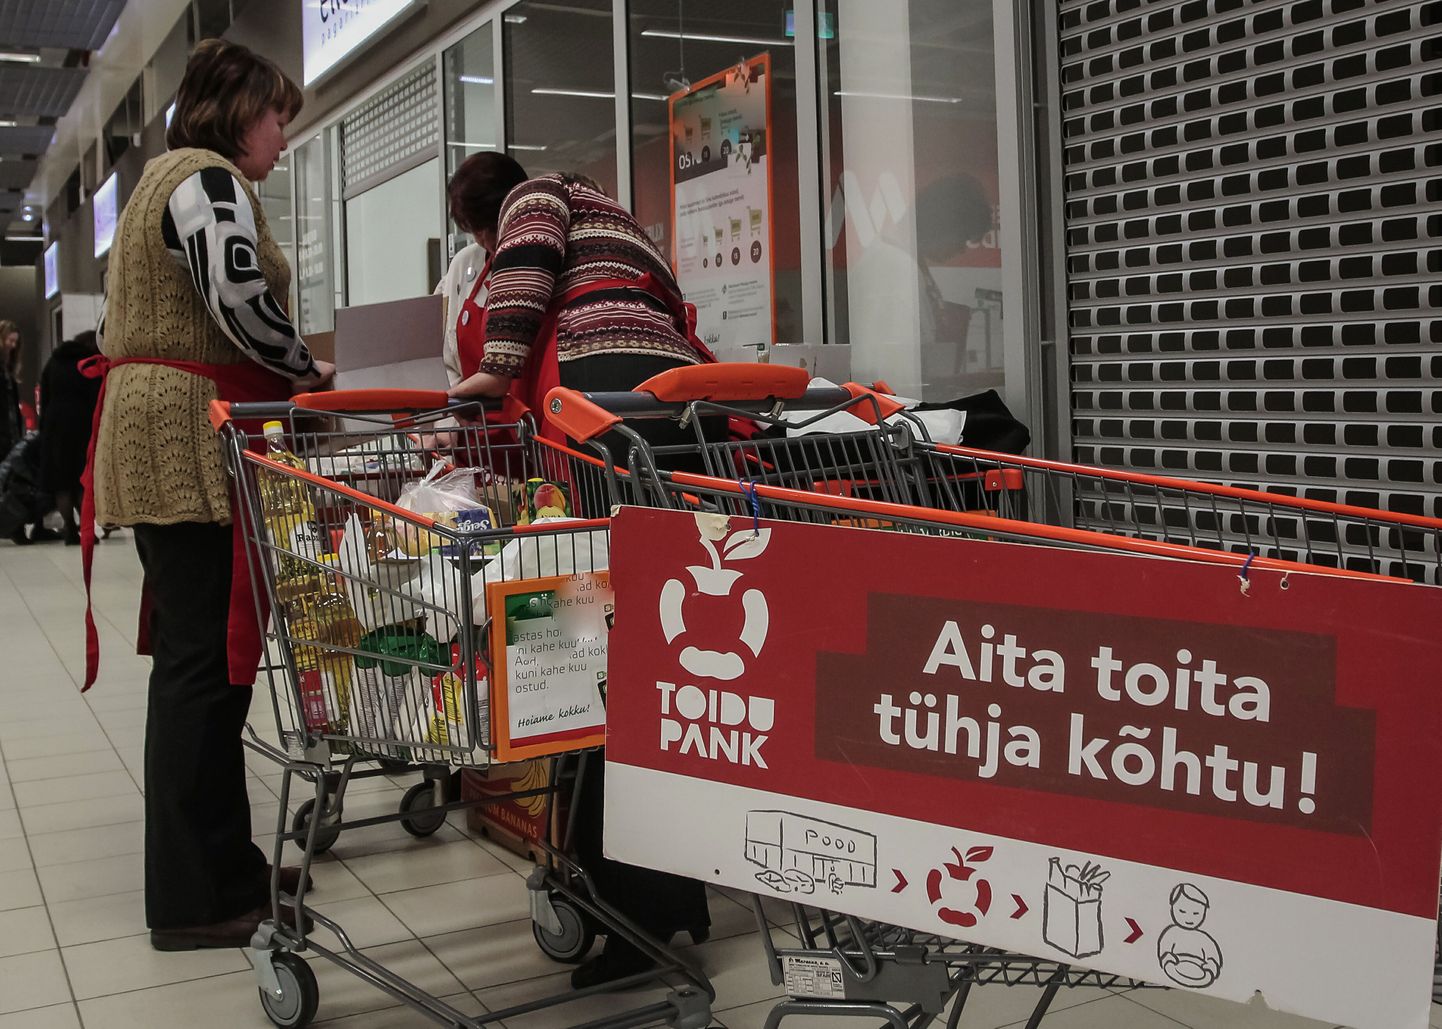 Nädalavahetusel Pärnu neljas suures toidukaupluses toimunud toidupanga annetuskampaaniaga koguti puuduses elavatele peredele ligikaudu kaks tonni toiduaineid.